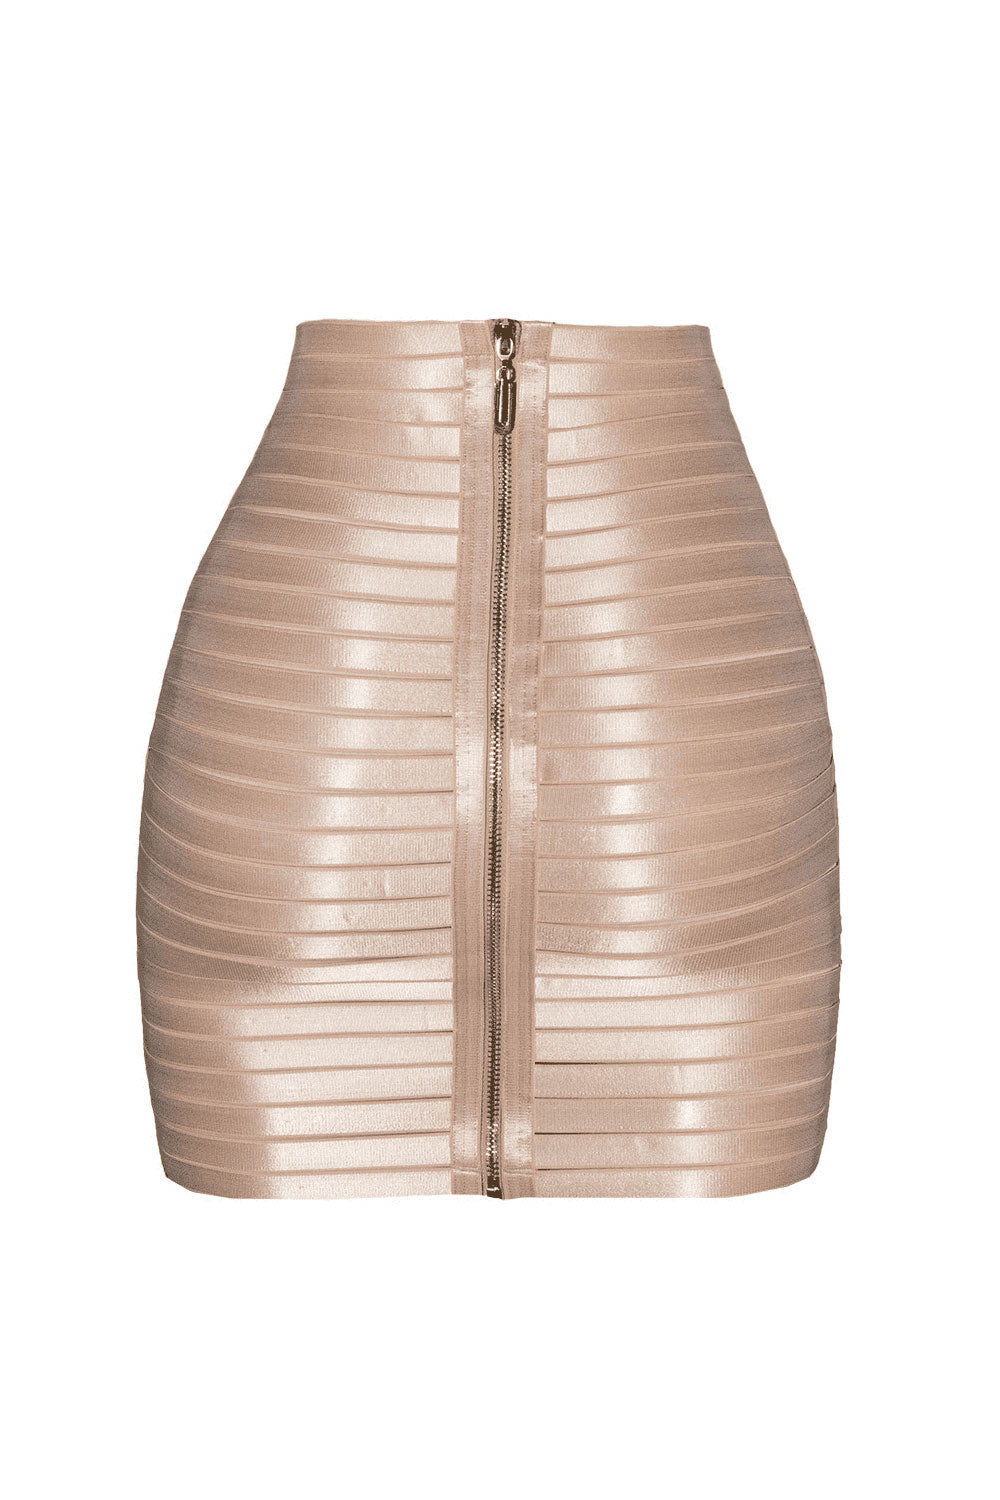 Efa Skirt - Bondage skirt by Keosme. Shop on yesUndress